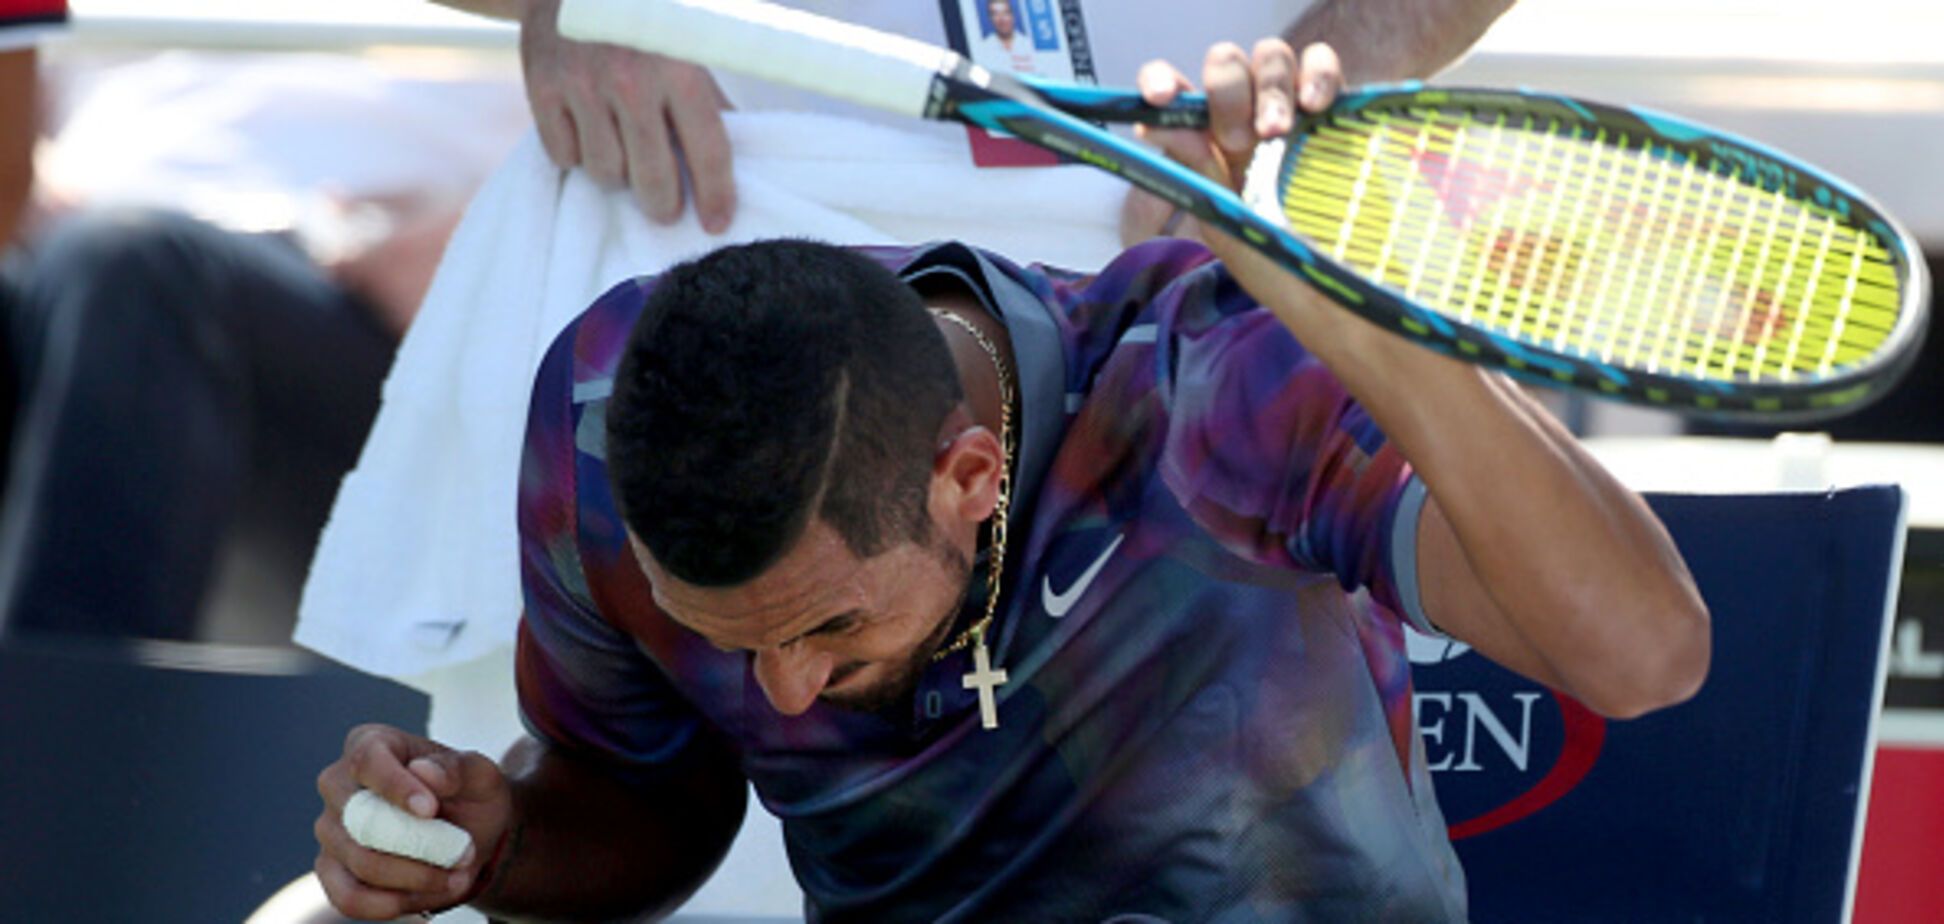 Одним ударом. Известный теннисист устроил дикие психи на US Open - видеофакт